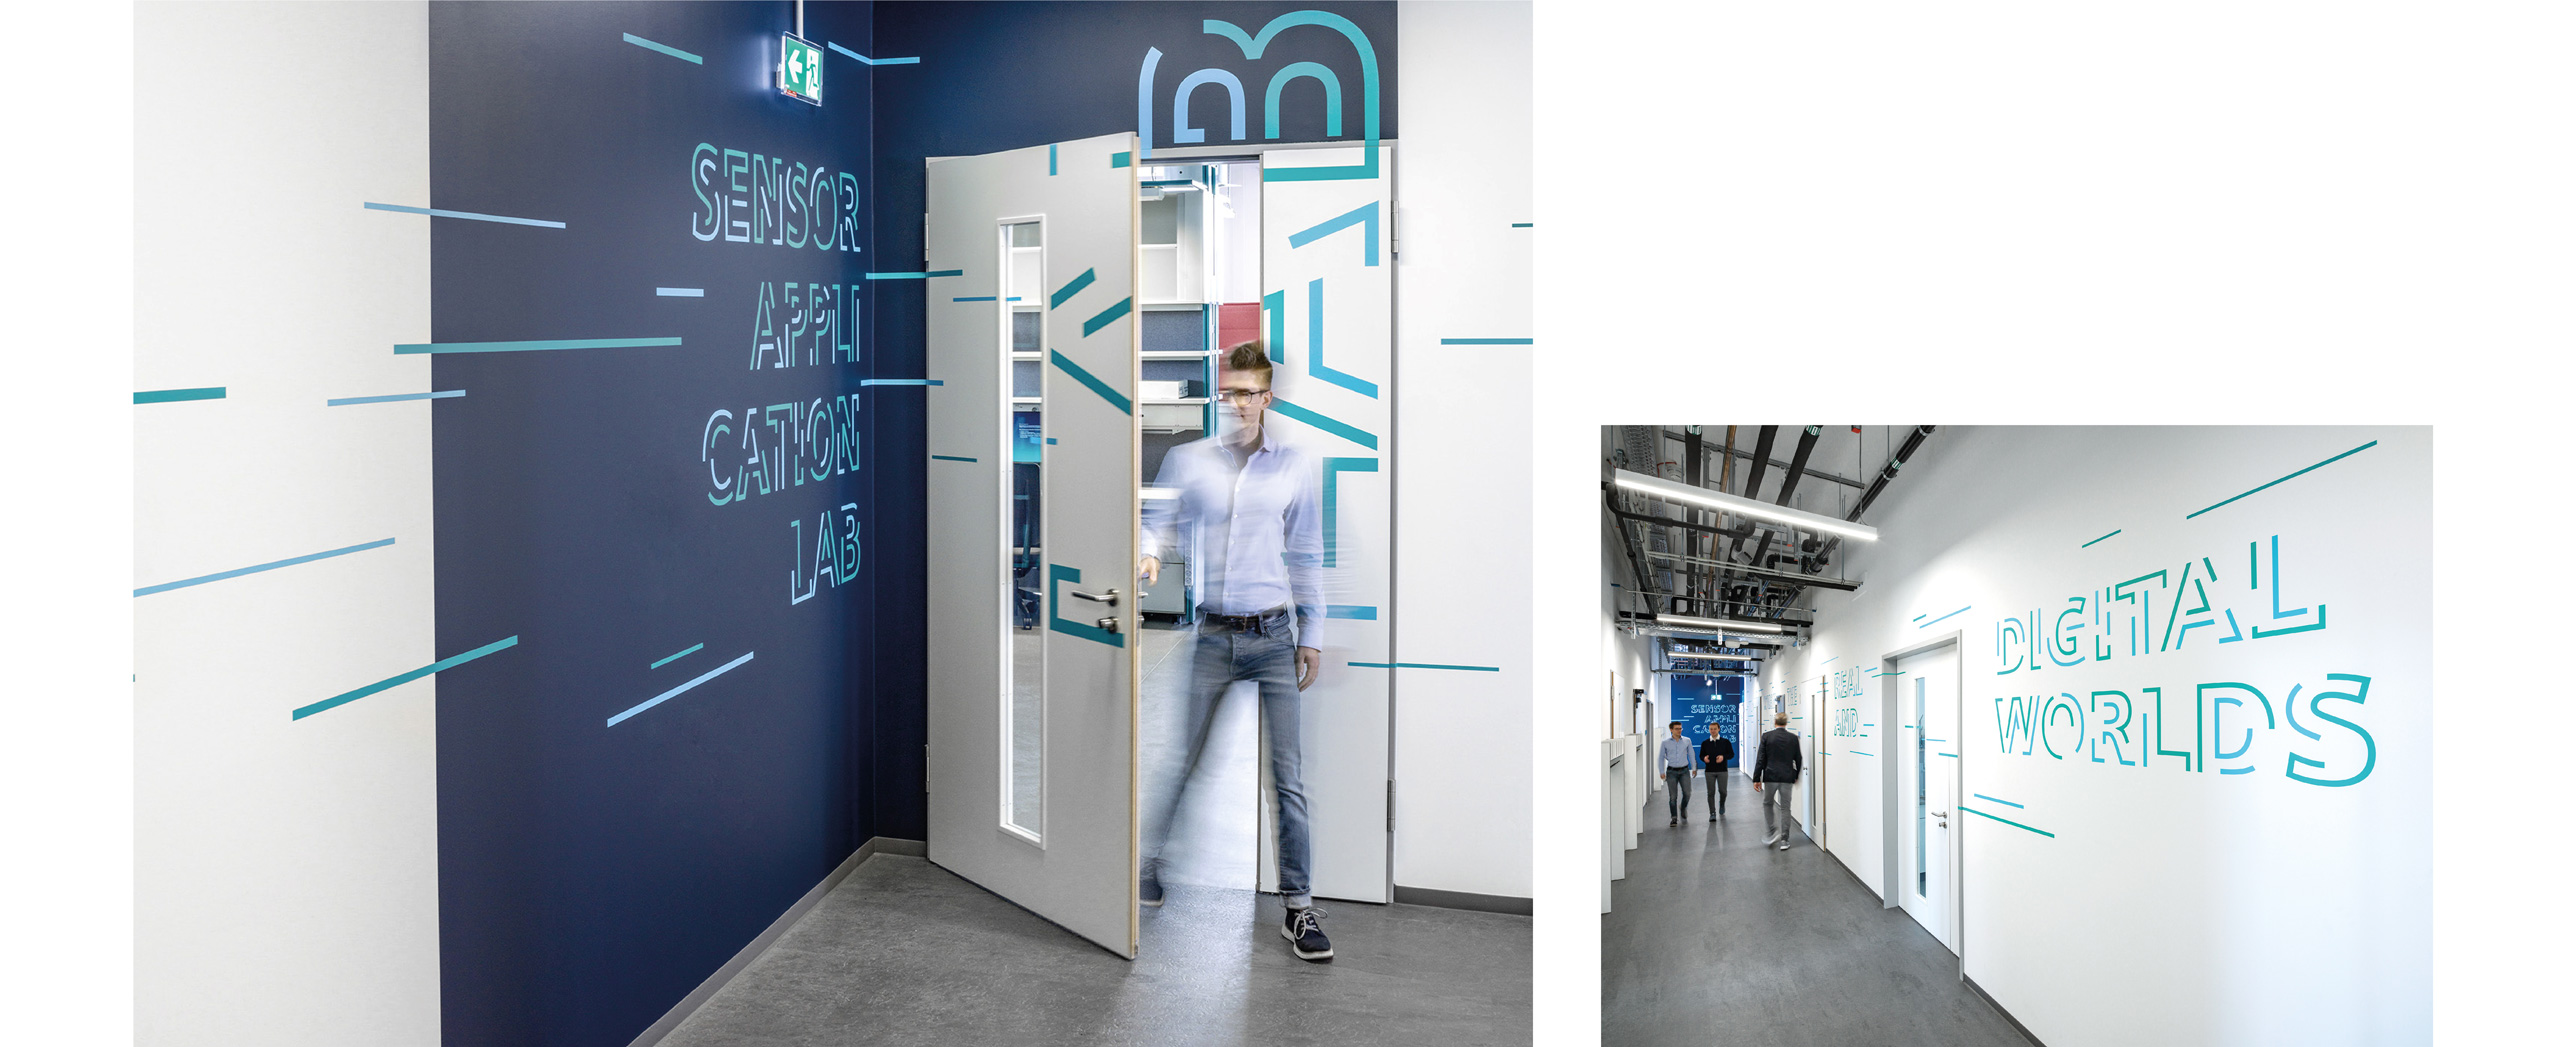 Collage aus 2 Bildern, Links sieht man einen Mann der durch die Tür kommt, auf der Tür und den blauen Wänden sind Gestaltungselemente in Grün angebracht; Links sieht man mehrere Personen, die durch einen Flur zu mehreren Räumen laufen